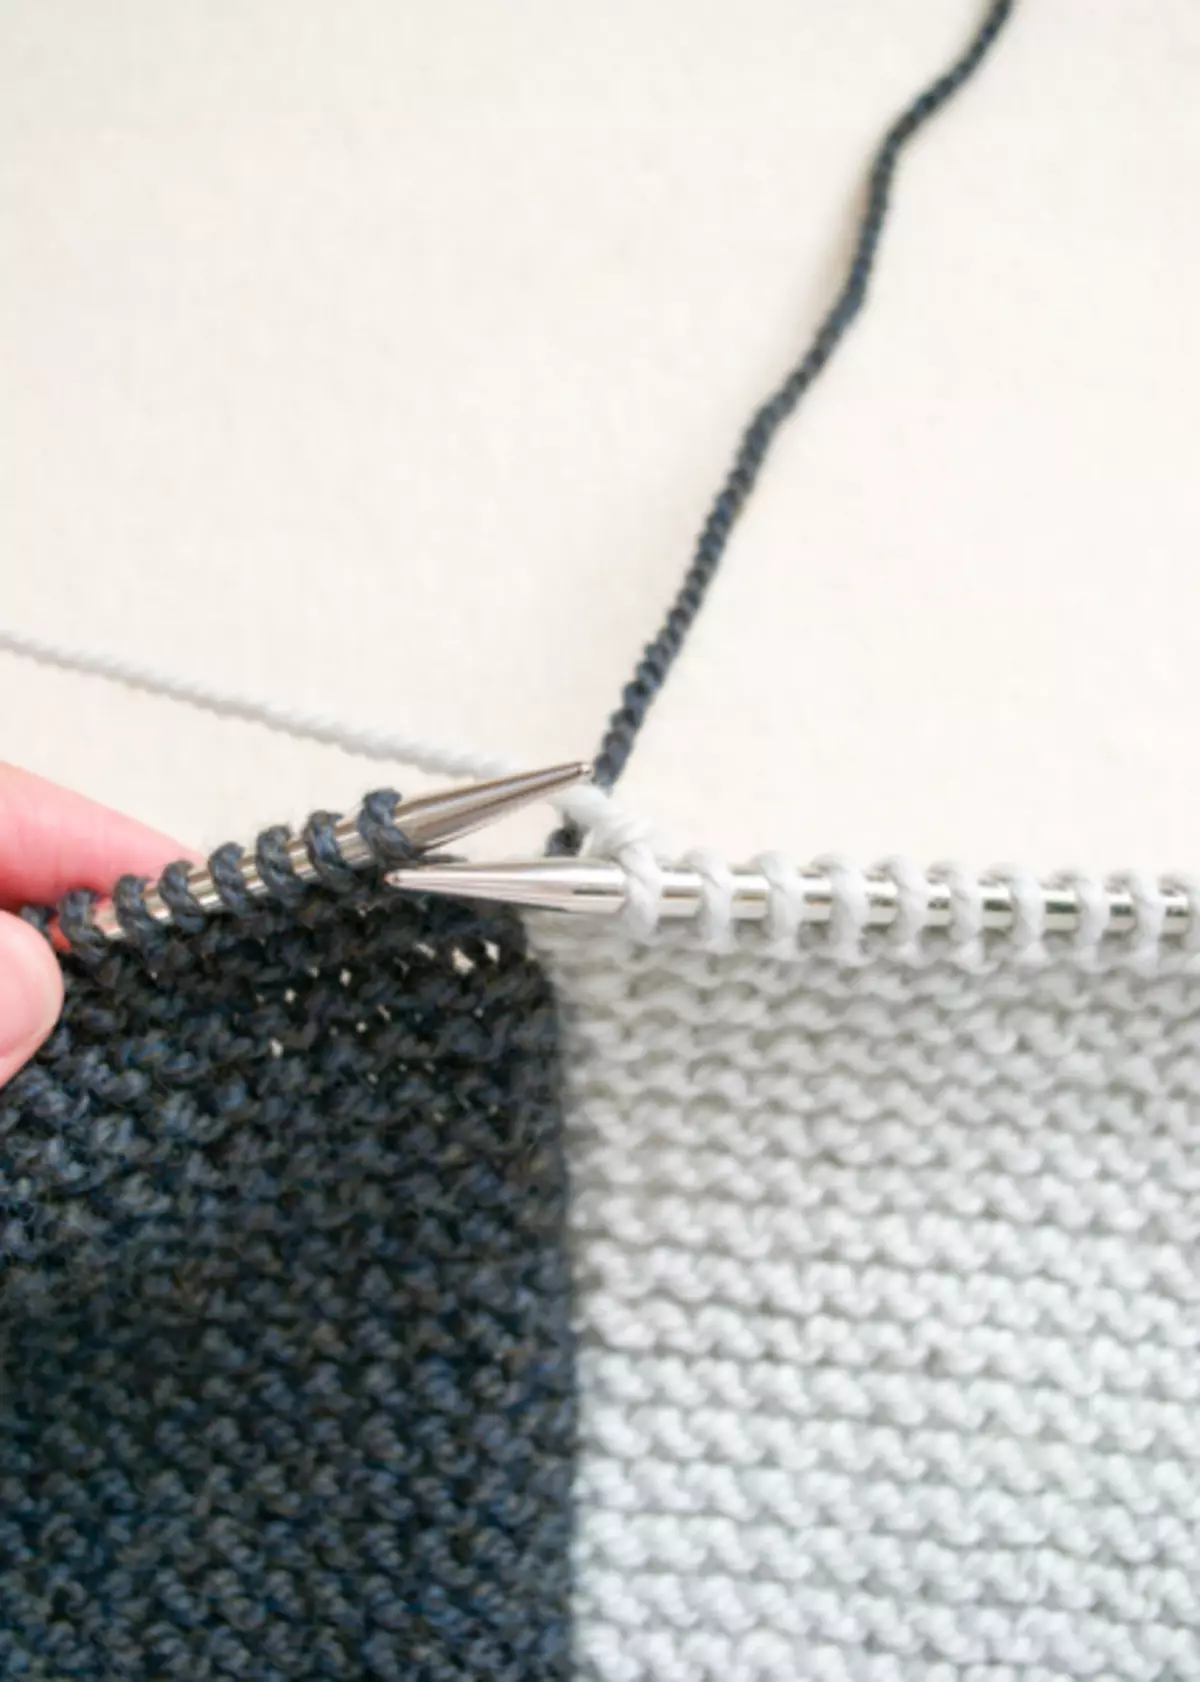 Transformator Vest Knitting Needles: Ordninger med beskrivelse og bilde